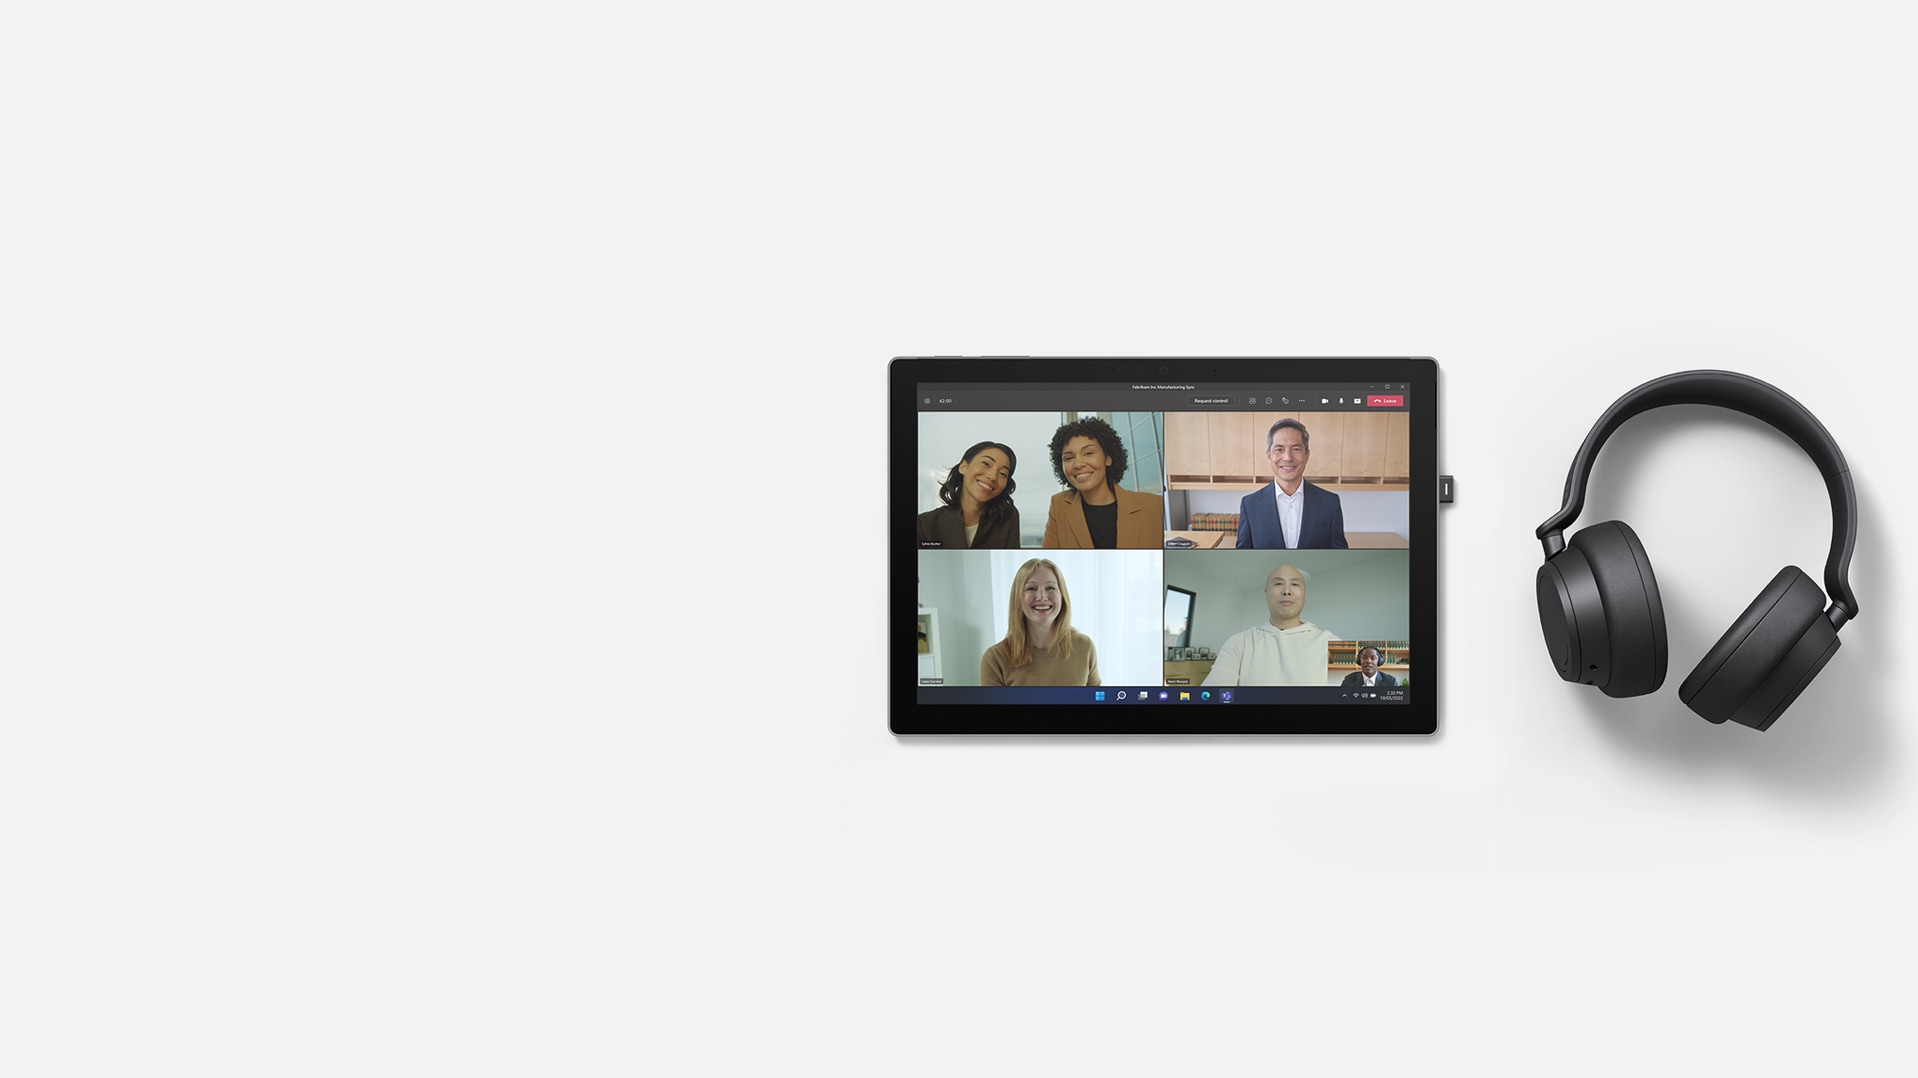 Tryb Razem w Microsoft Teams używany na urządzeniu Surface Pro 7+, obok którego po prawej stronie stoi Surface Headphones 2+